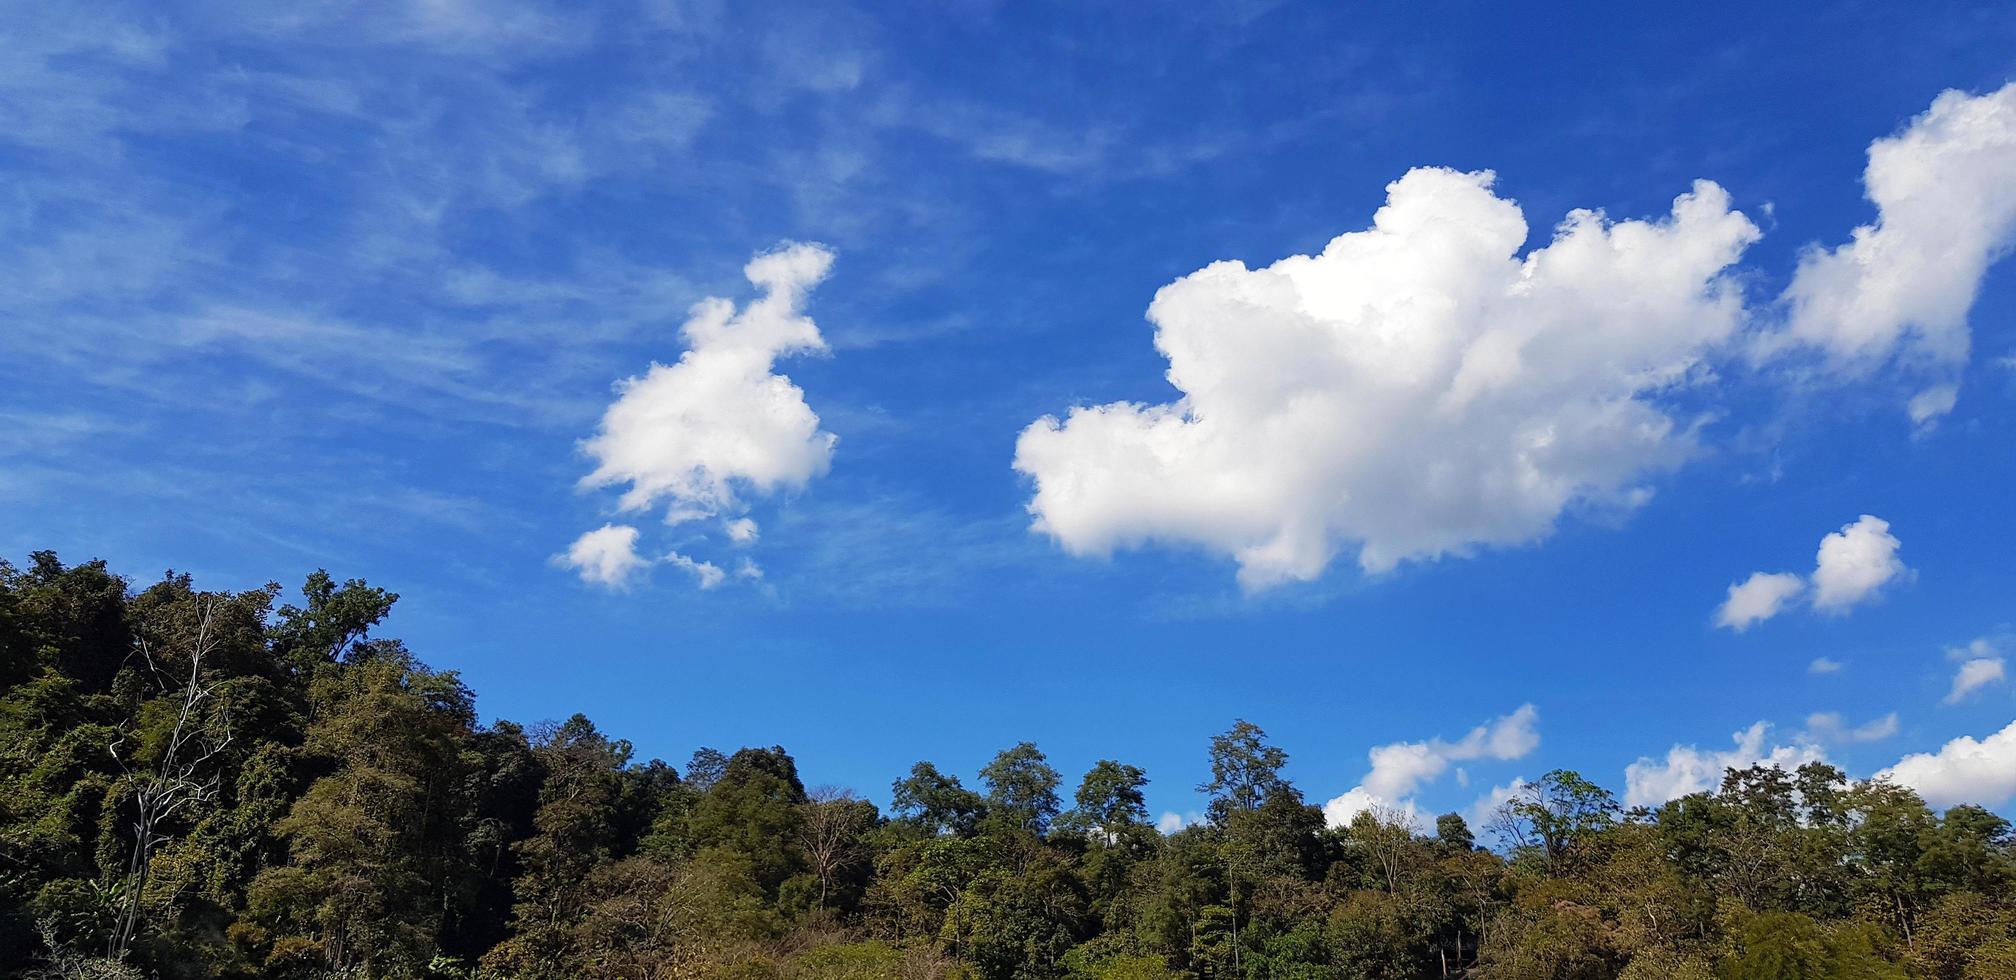 lindo céu azul com nuvem branca e árvore verde, floresta ou selva com espaço policial acima para adicionar texto. beleza da natureza e papel de parede natural. ar fresco e vista cloudscape. foto